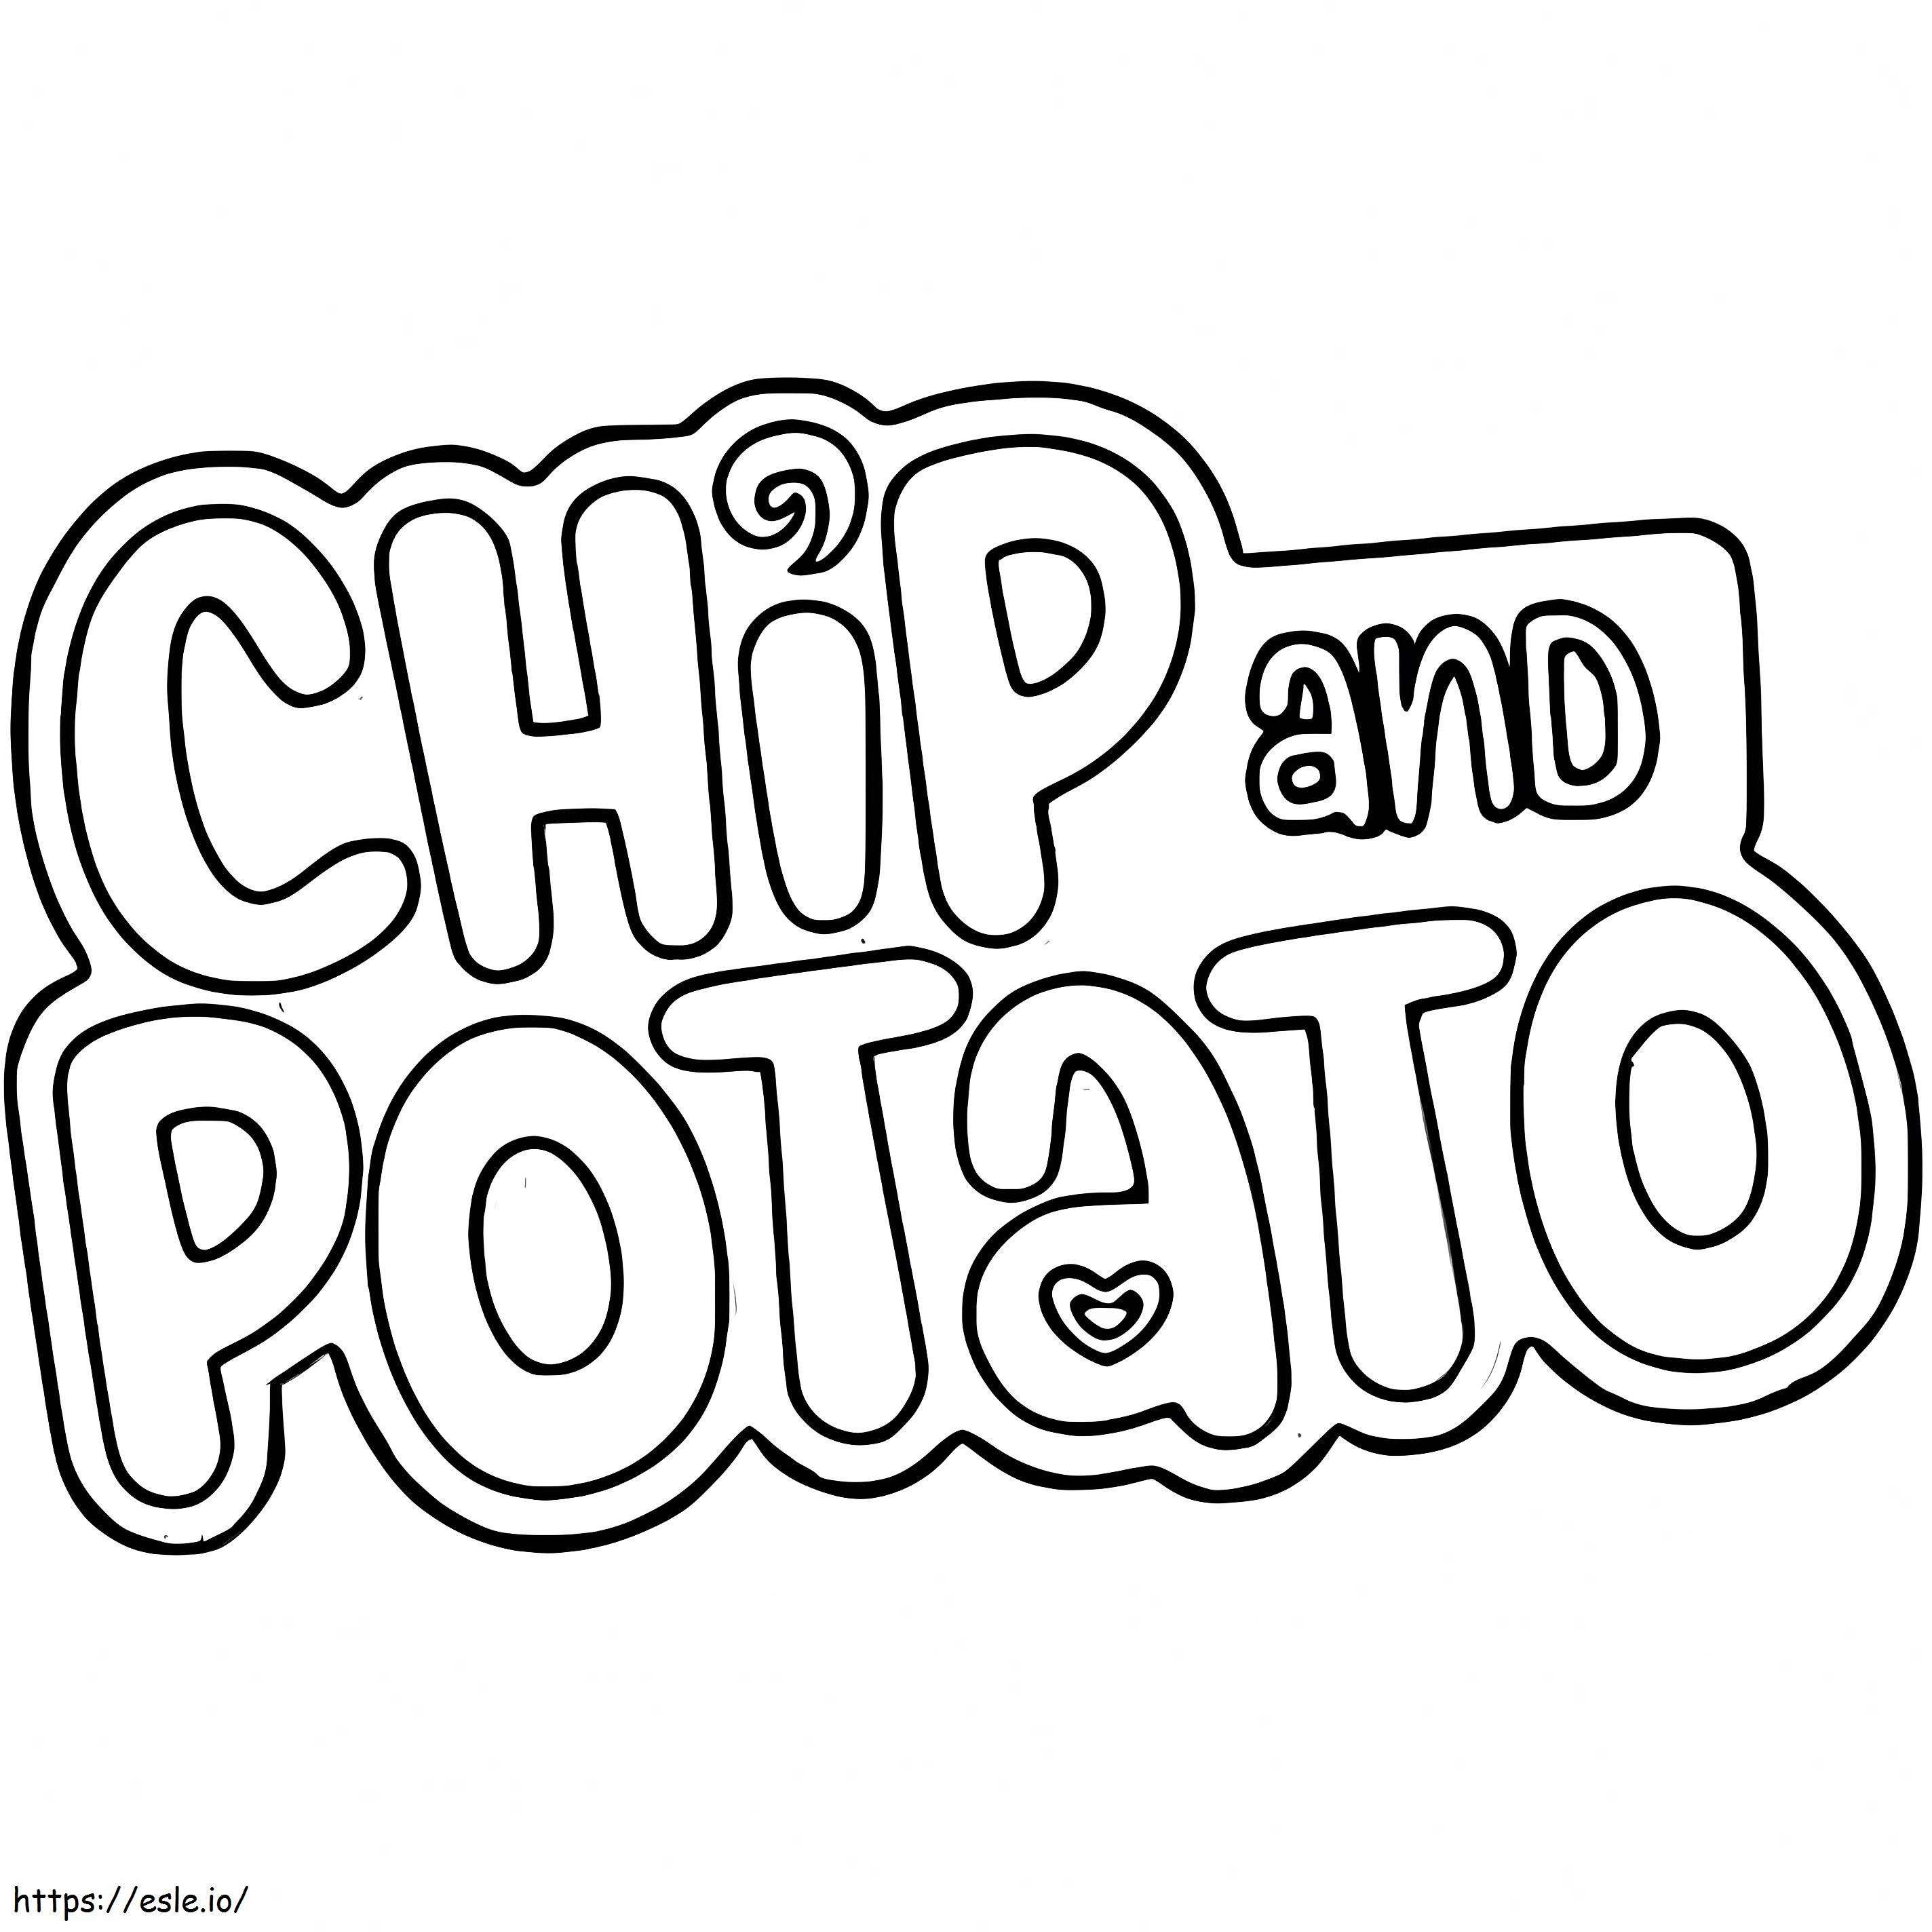 Logo Chip și cartofi de colorat